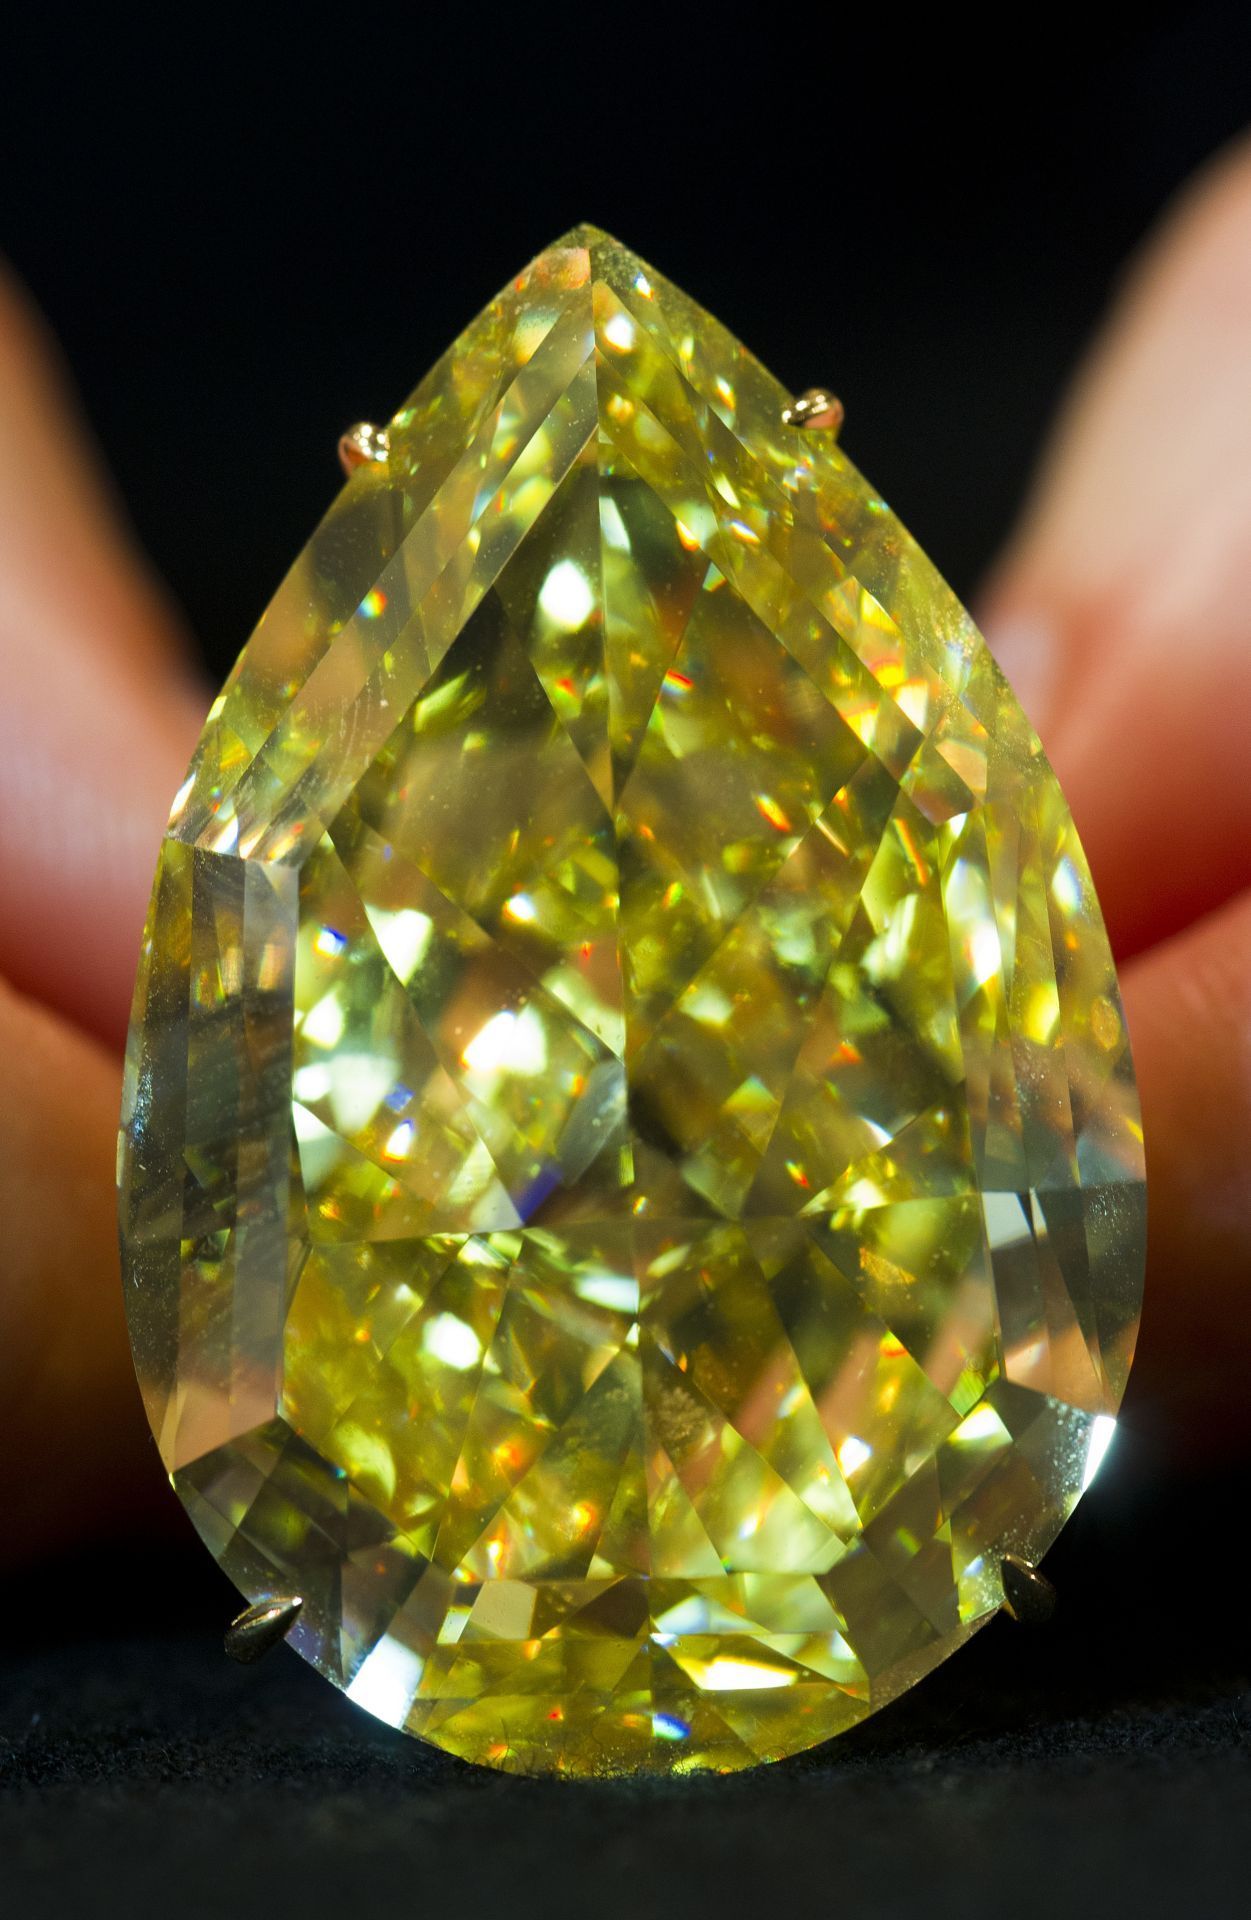 Der "Sun Drop" aus Südafrika gilt mit 110 Karat als der größte gelbe Diamant, der je versteigert wurde. 2011 erzielte er bei einer Genfer Auktion etwas über acht Millionen Euro. Entdeckt wurde er 2010 und ist im "Birnen“- oder auch Tropfenschliff veredelt, wodurch er seinen Namen erhielt.